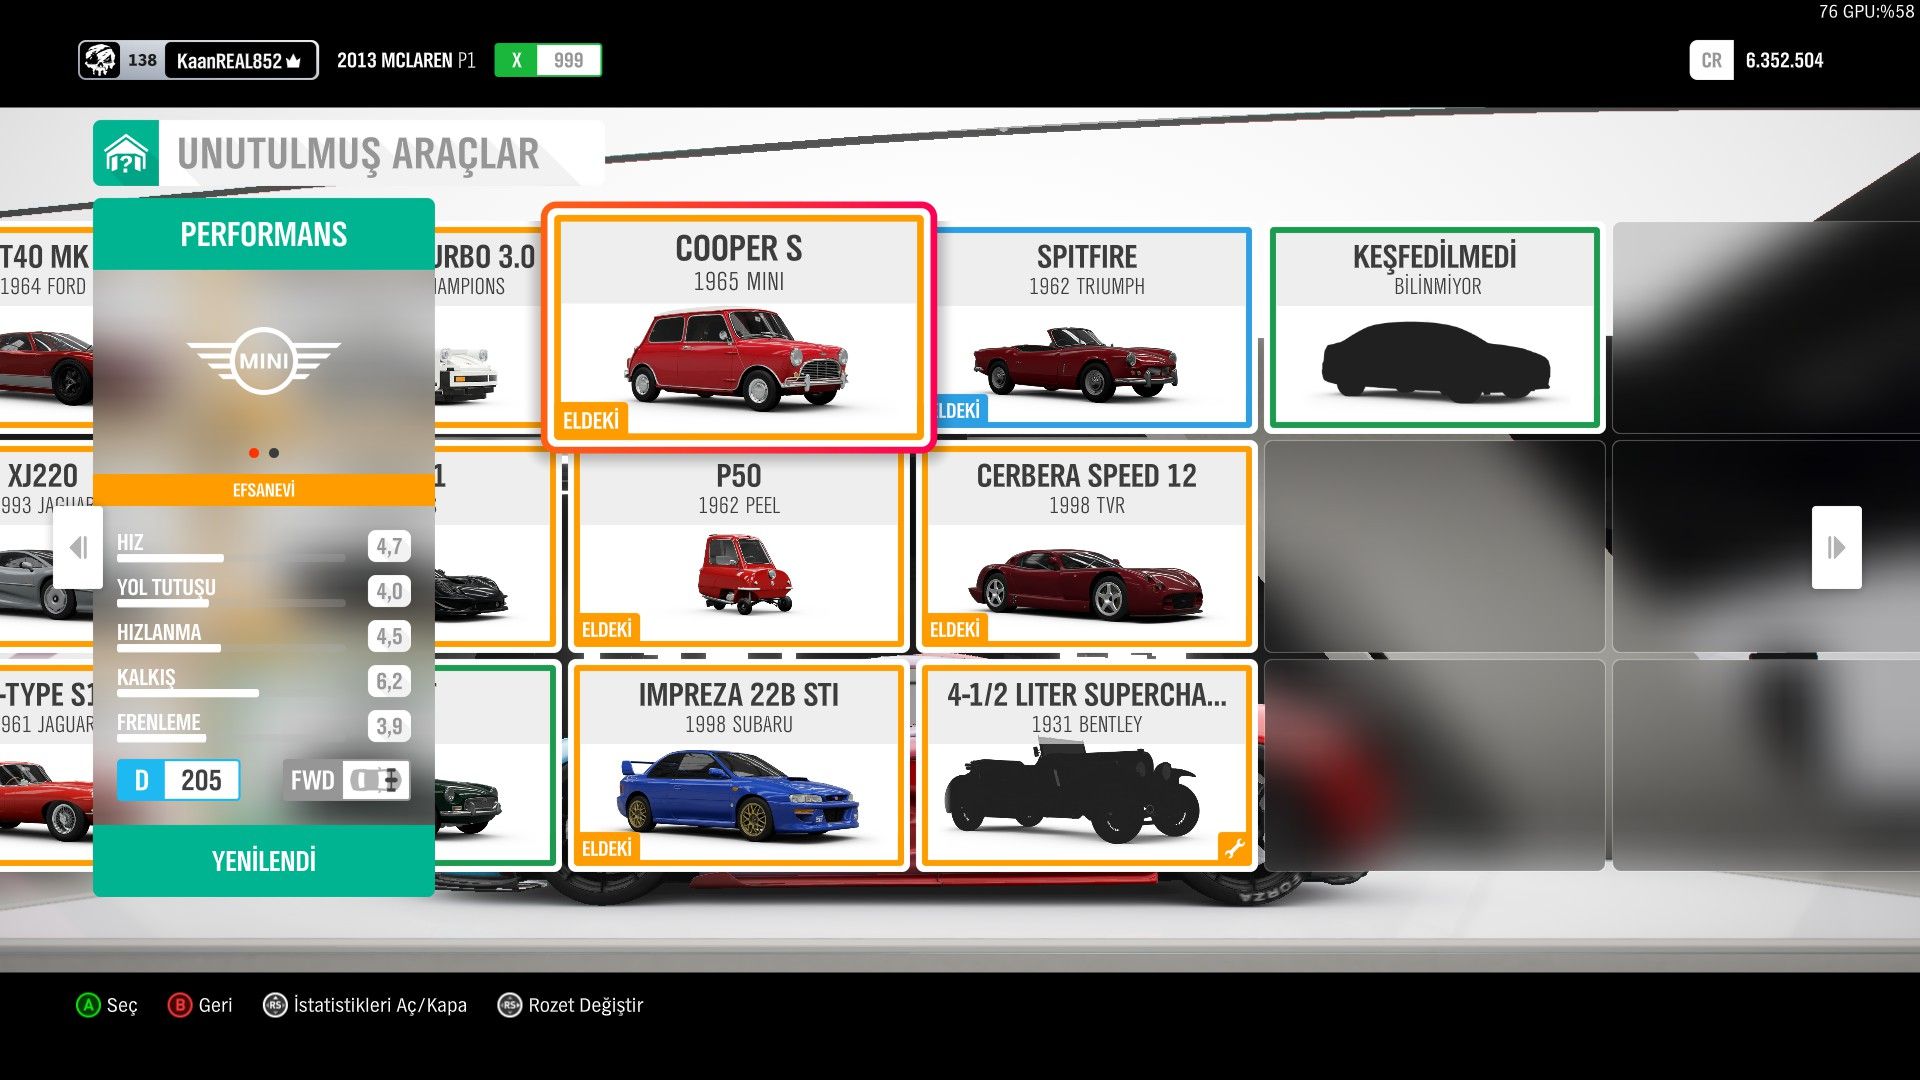 Çözüldü: Forza Horizon 4 son unutulmuş araba nasıl açılır? | Technopat  Sosyal